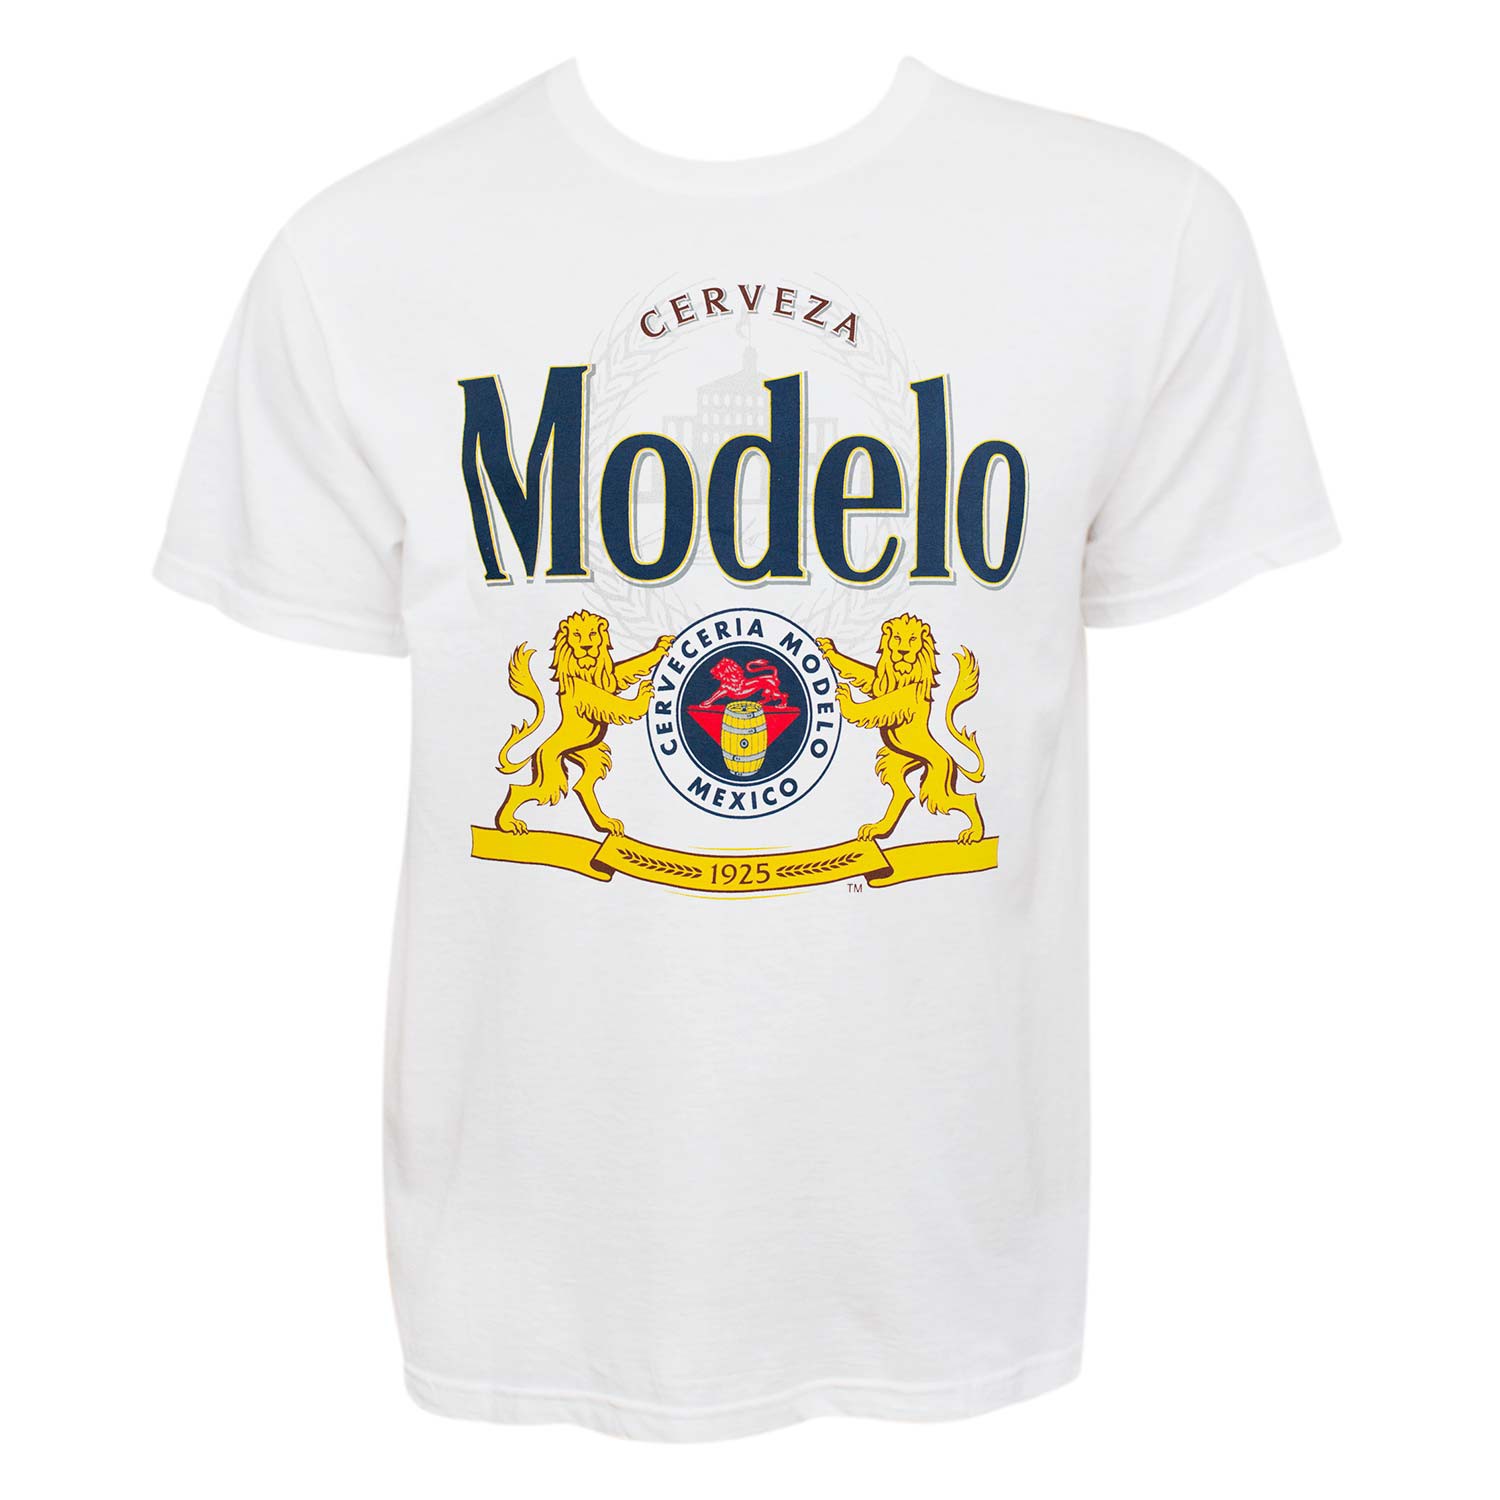 Modelo Cerveza Graphic Logo Tee Shirt